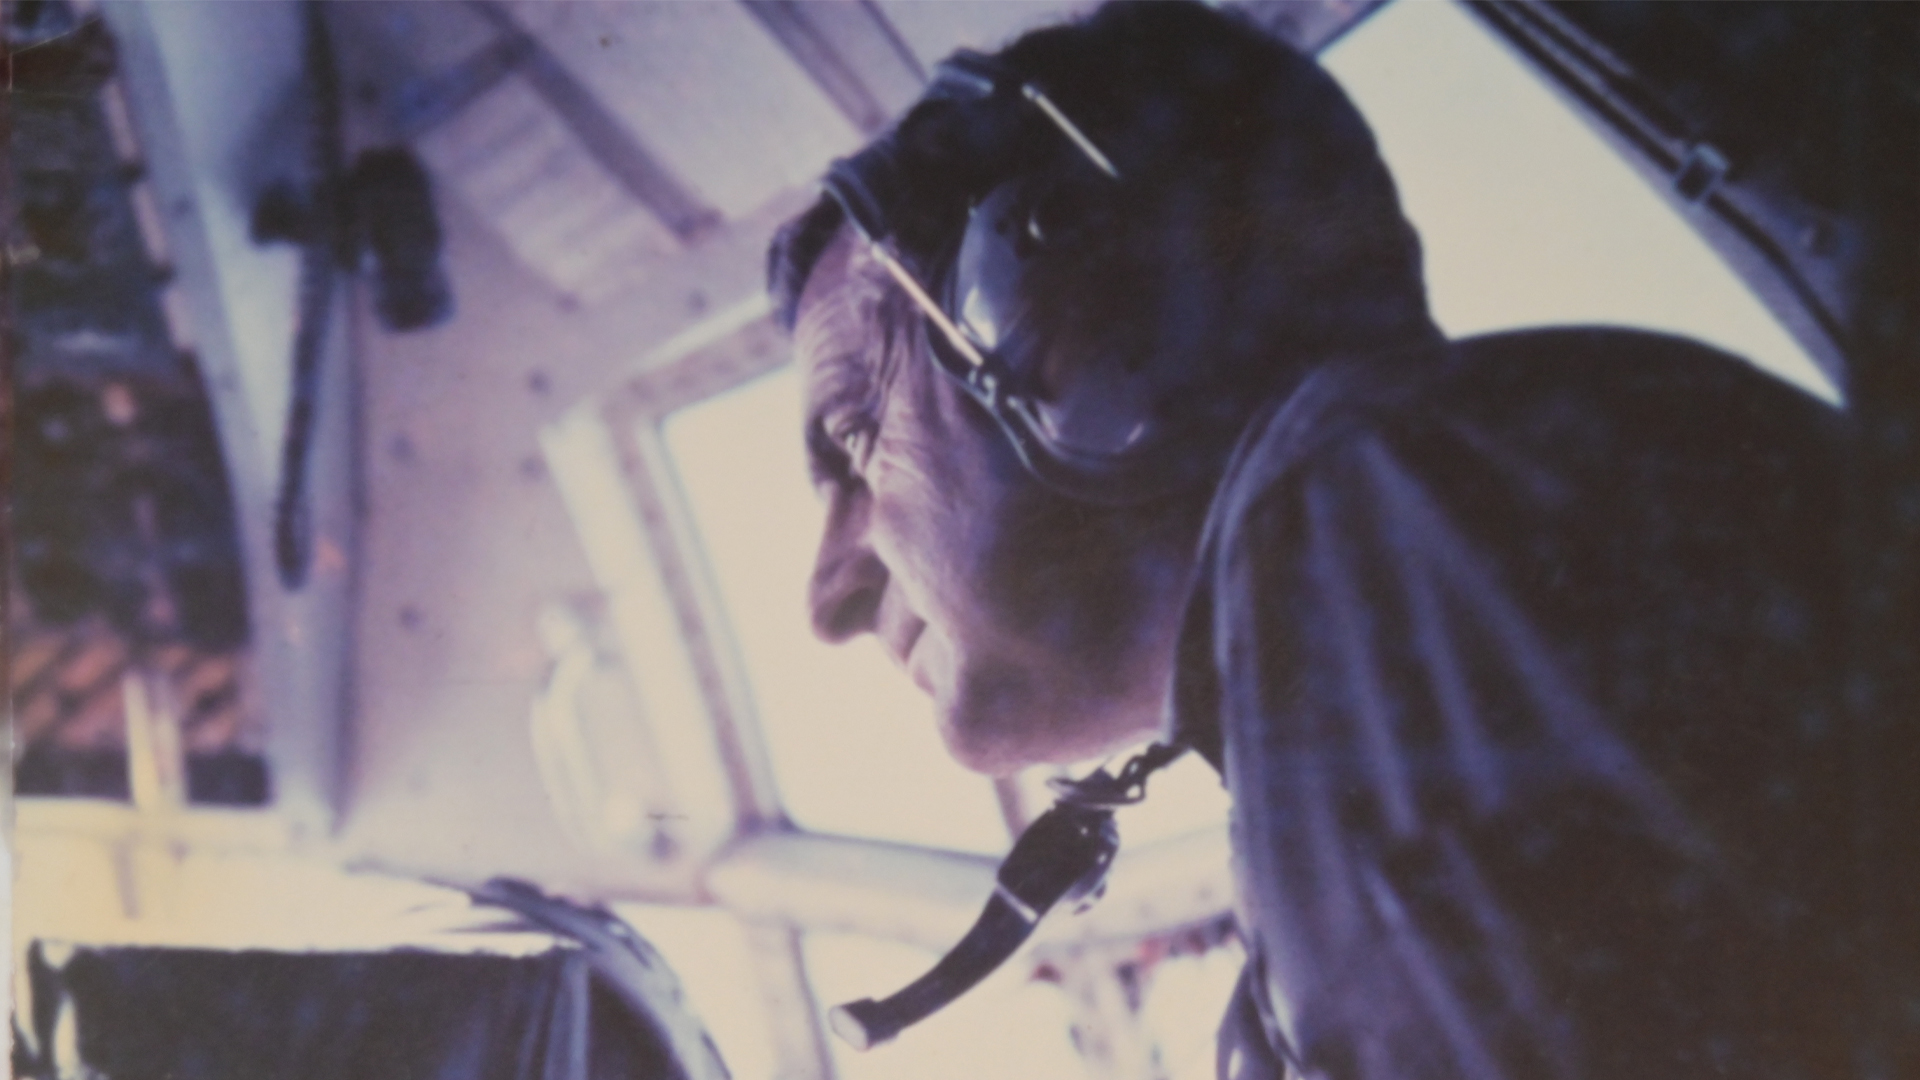 Roberto Noe, hoy brigadier mayor de la Fuerza Aérea, era uno de los pilotos de los Hércules KC130 que realizaba reabastecimiento de combustible en vuelo a las otras aeronaves. (Gentileza R.N.)